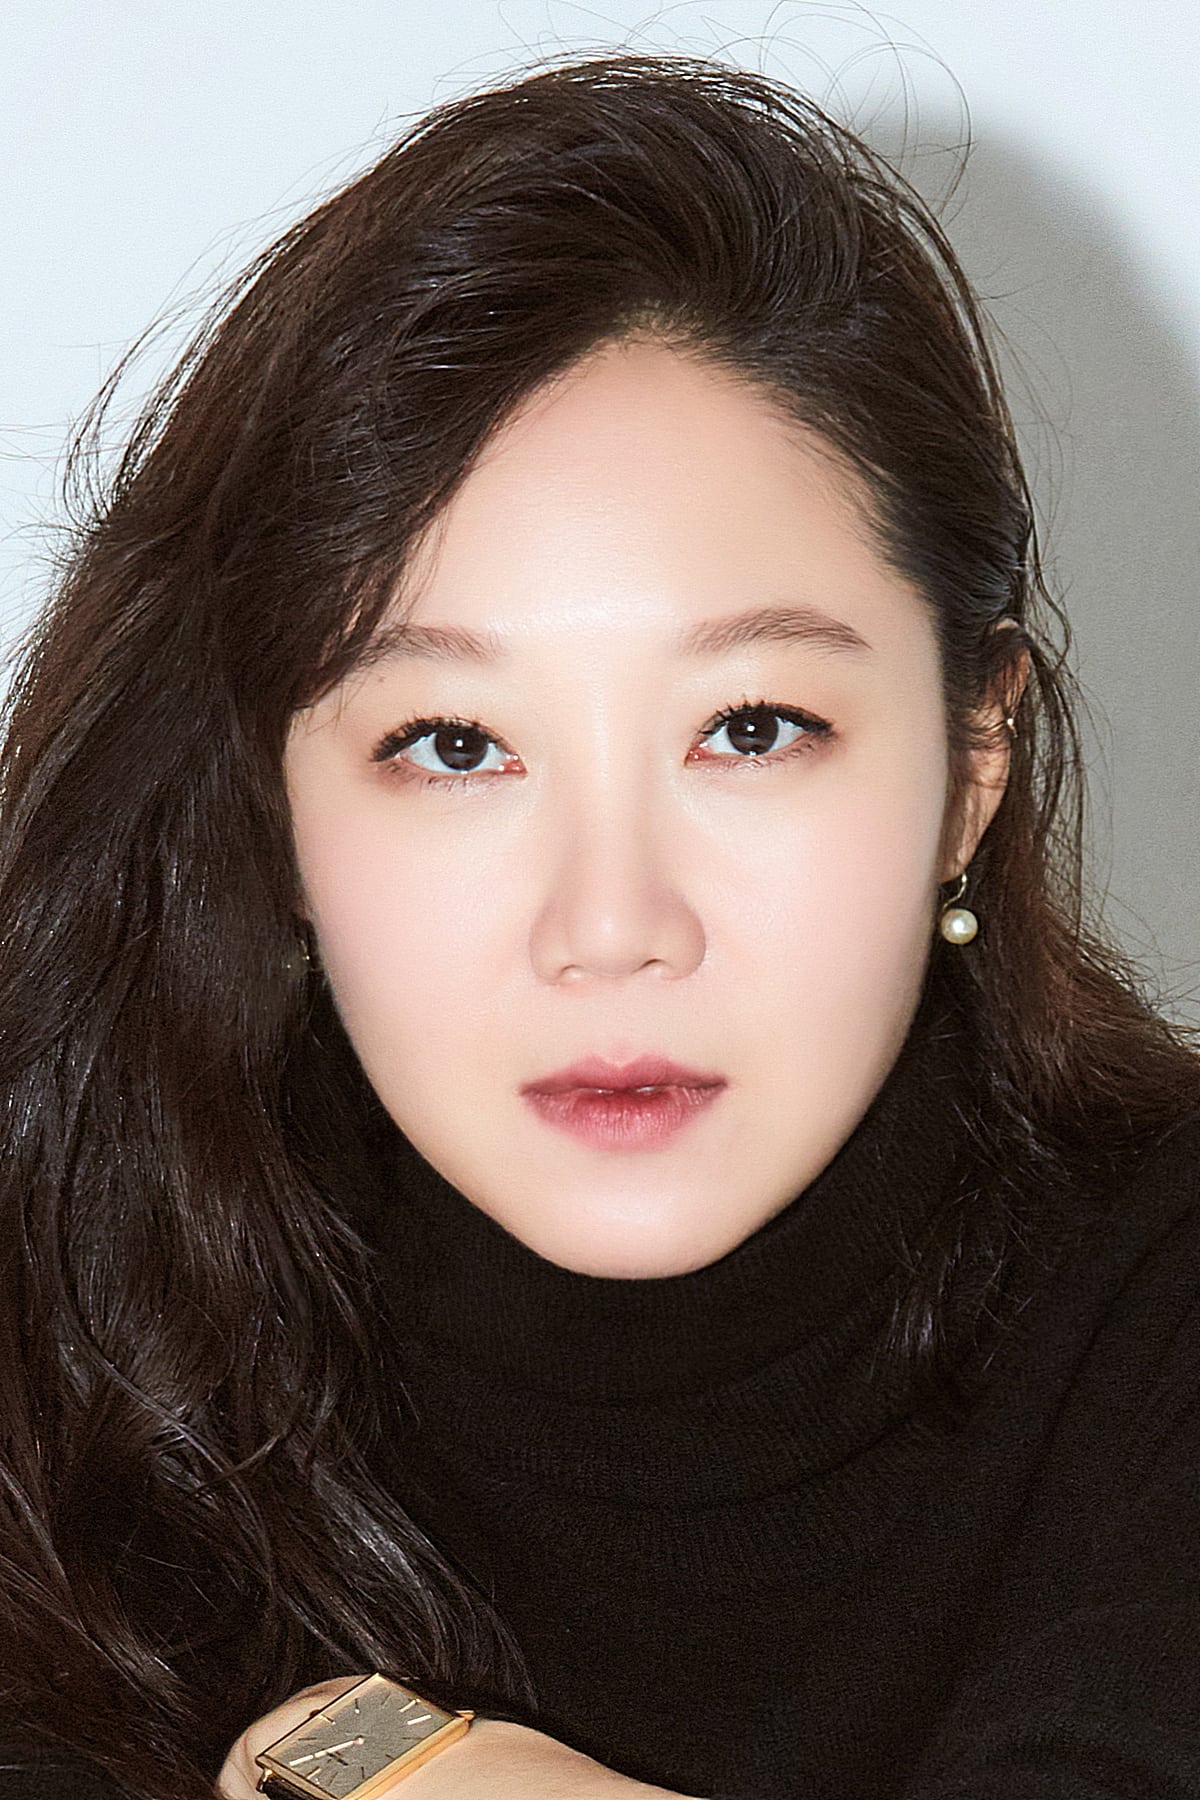 Gong Hyo Jin - phù dâu may mắn: Ngoài 40 tuổi vẫn cực trẻ đẹp nhờ skinkcare bằng 1 chiếc thìa - Ảnh 2.